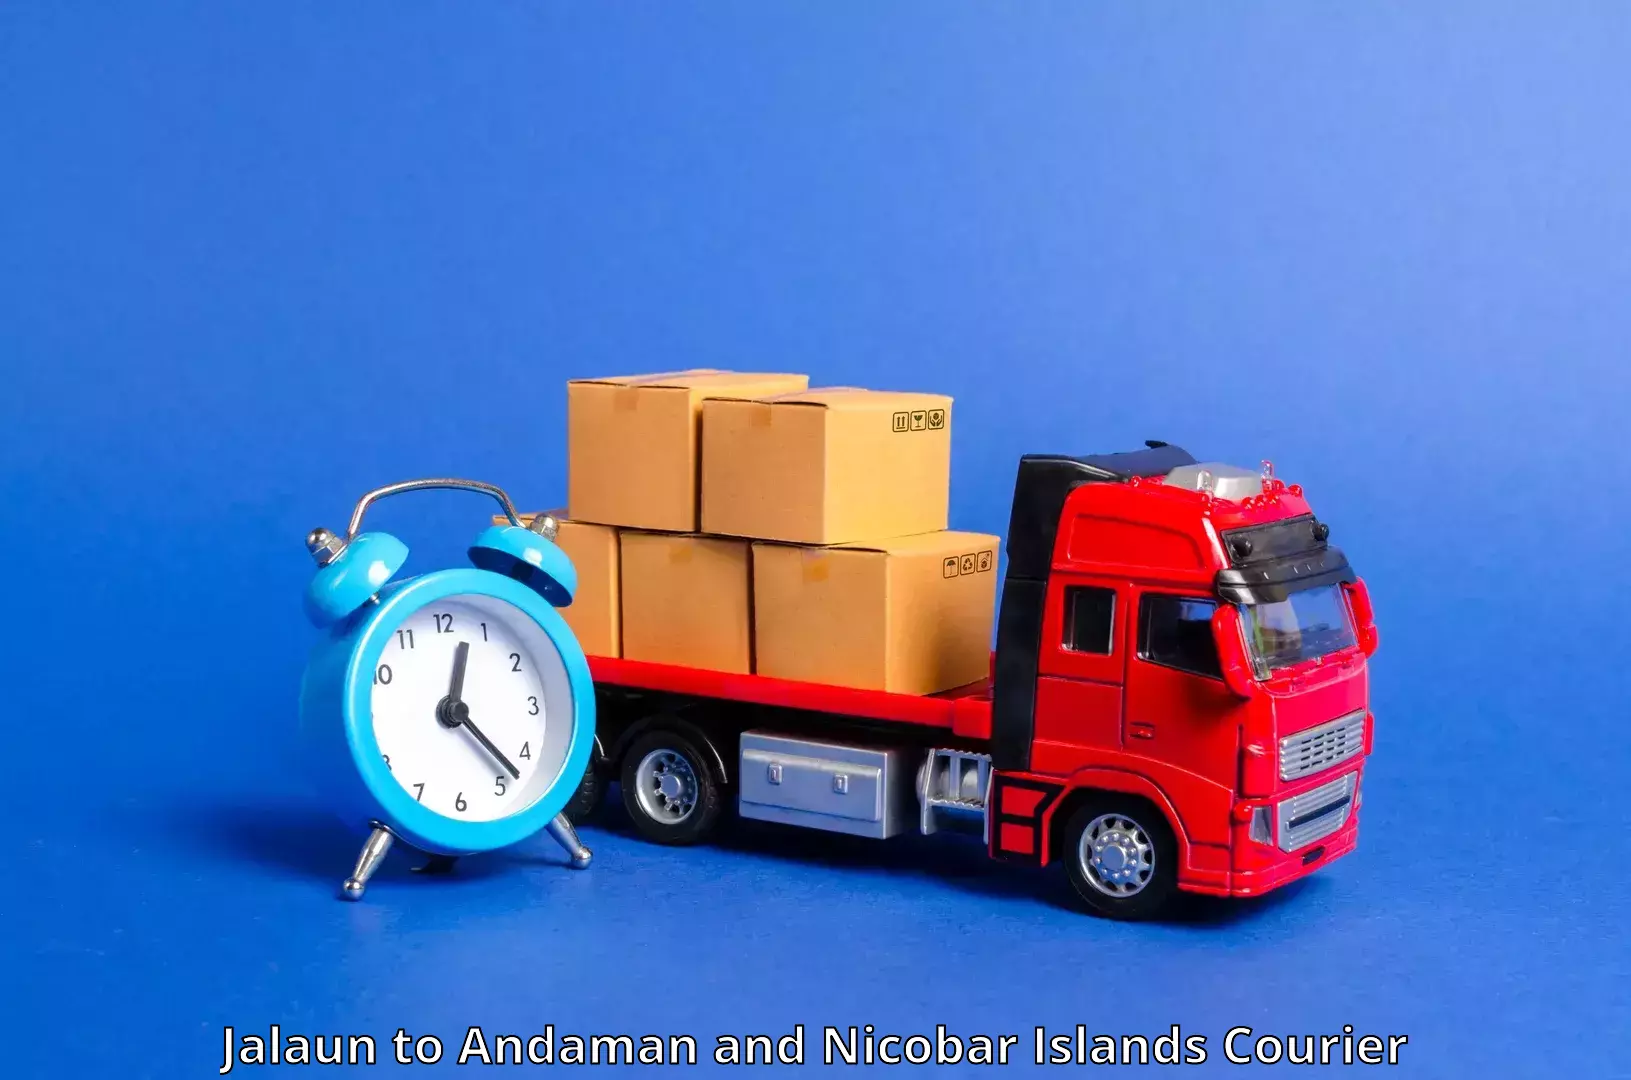 Urban courier service Jalaun to Andaman and Nicobar Islands